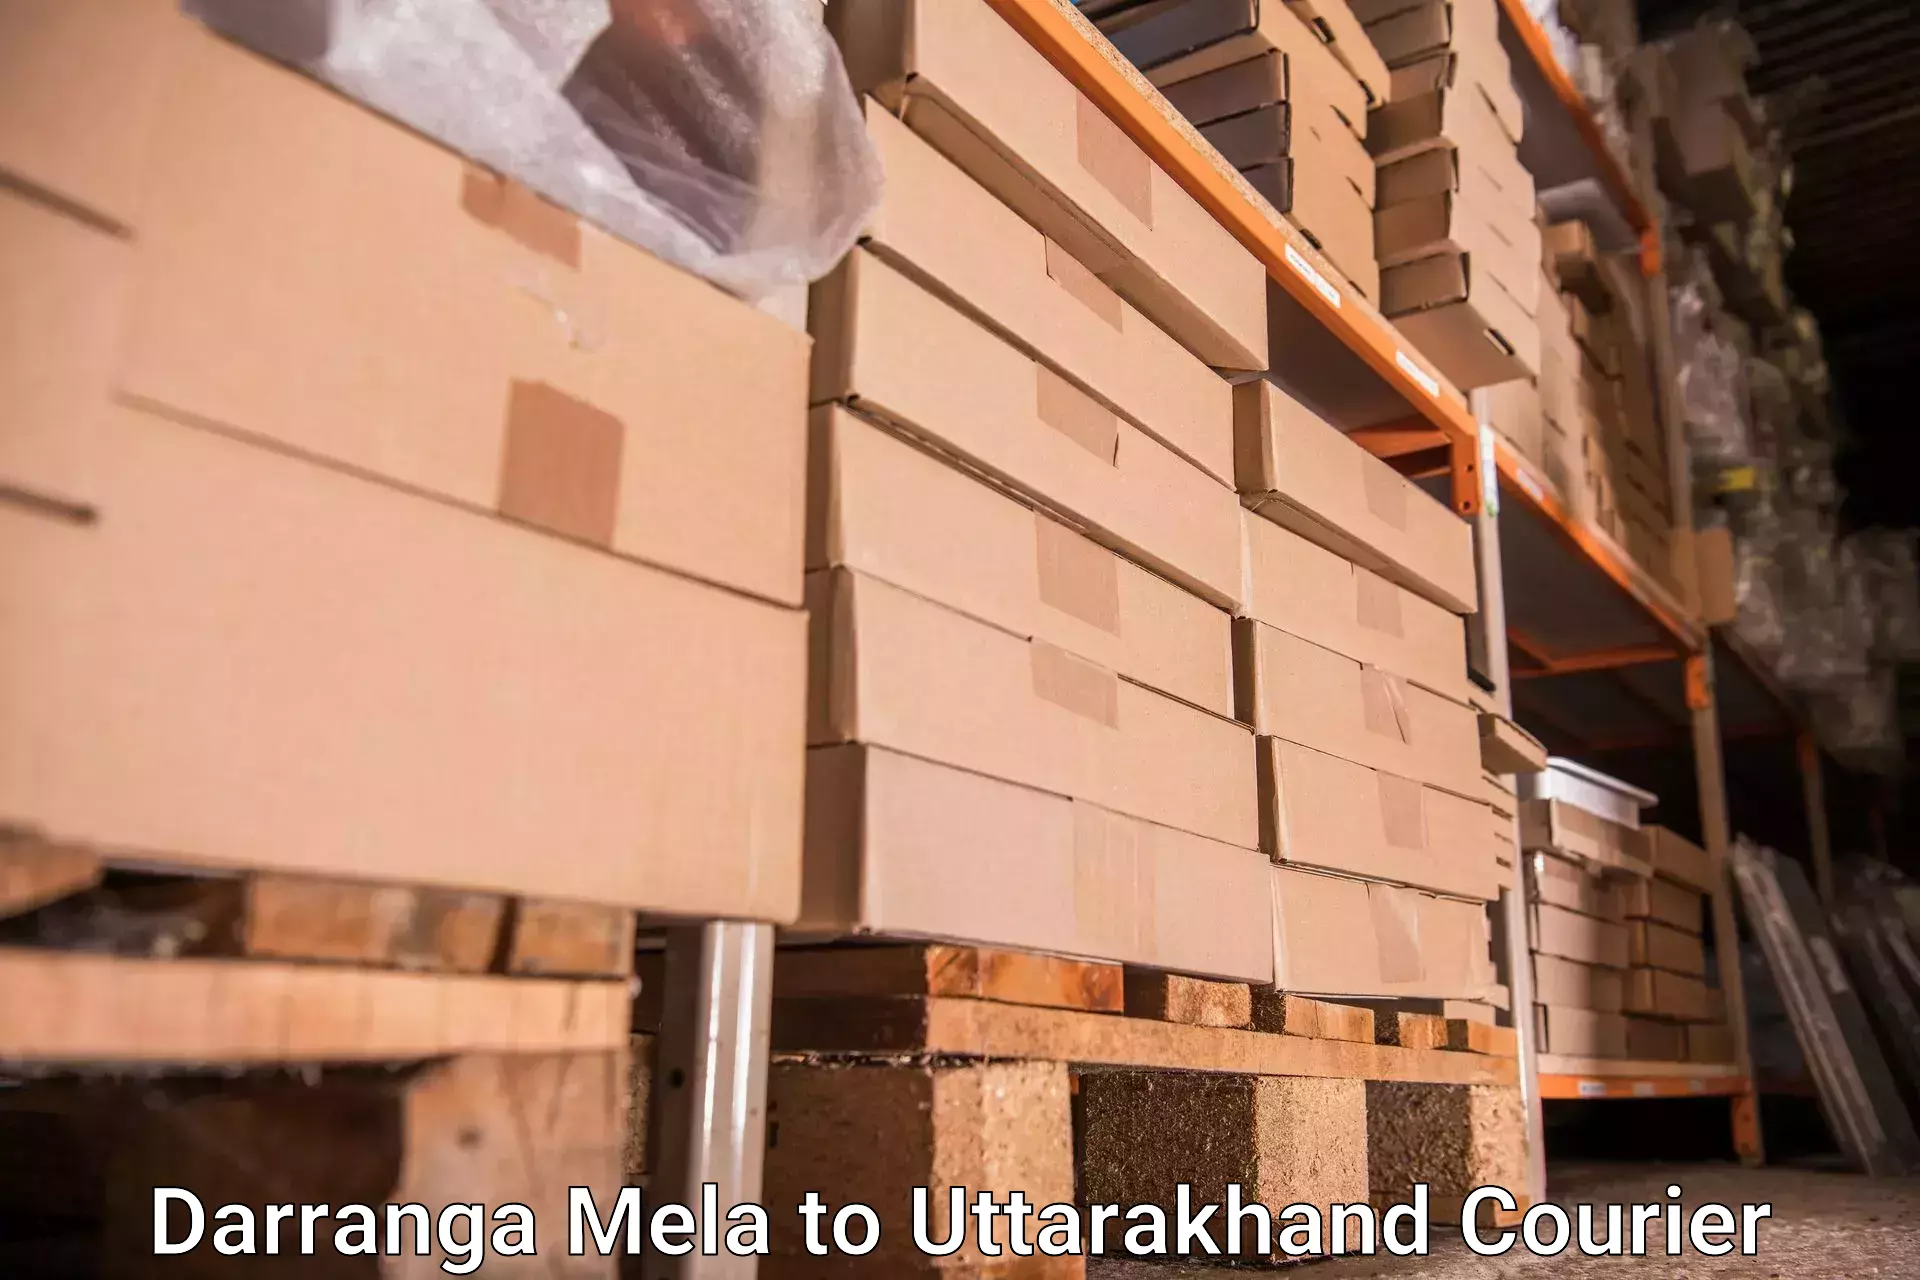 Quick luggage shipment in Darranga Mela to Uttarkashi